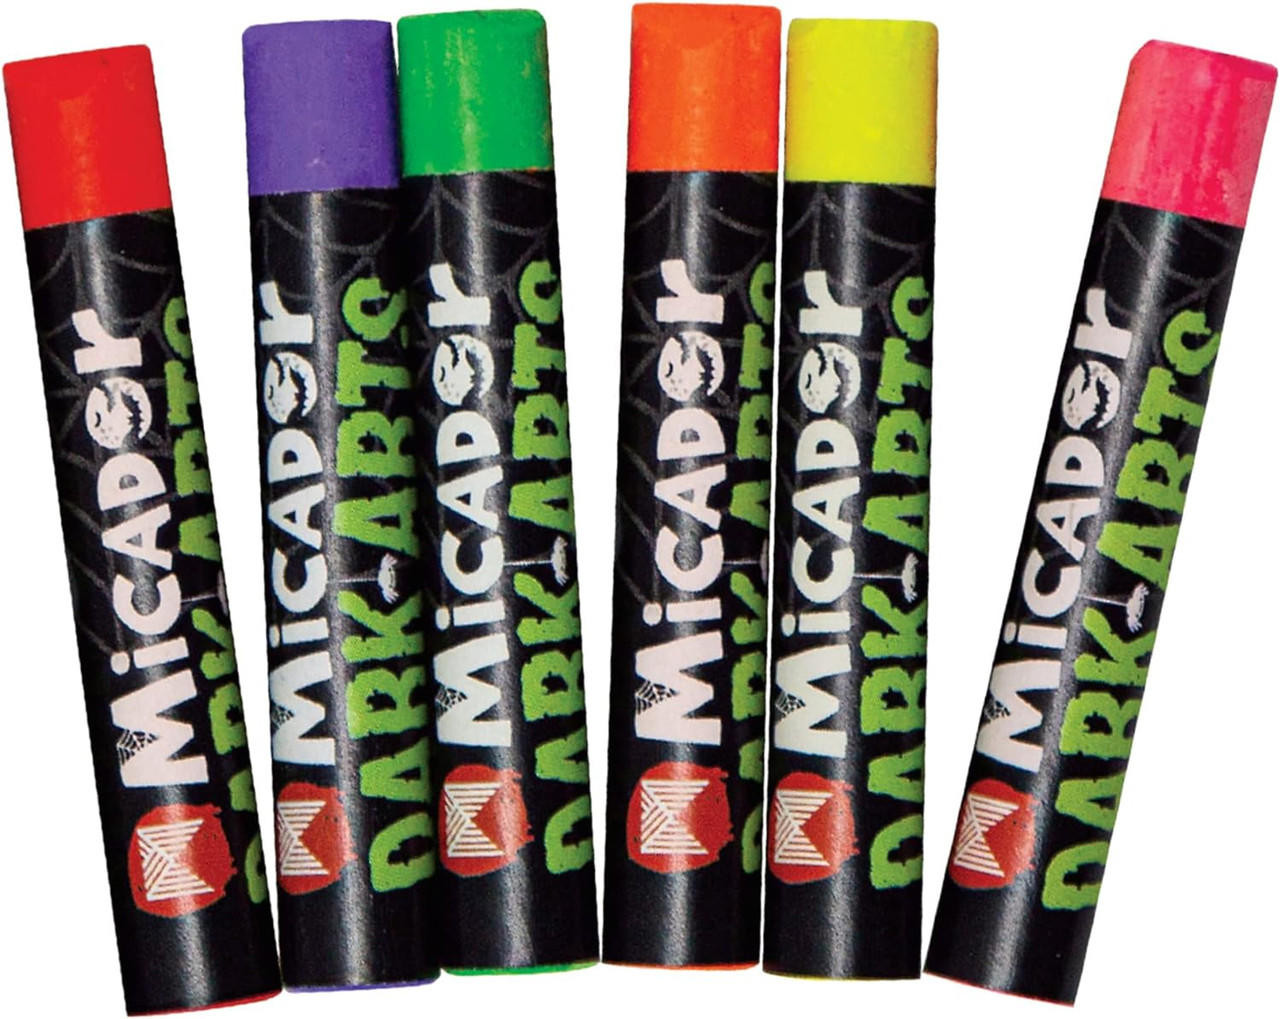 Micador Dark Arts, Neon Glow Crayons Pack, 6-Crayon Set